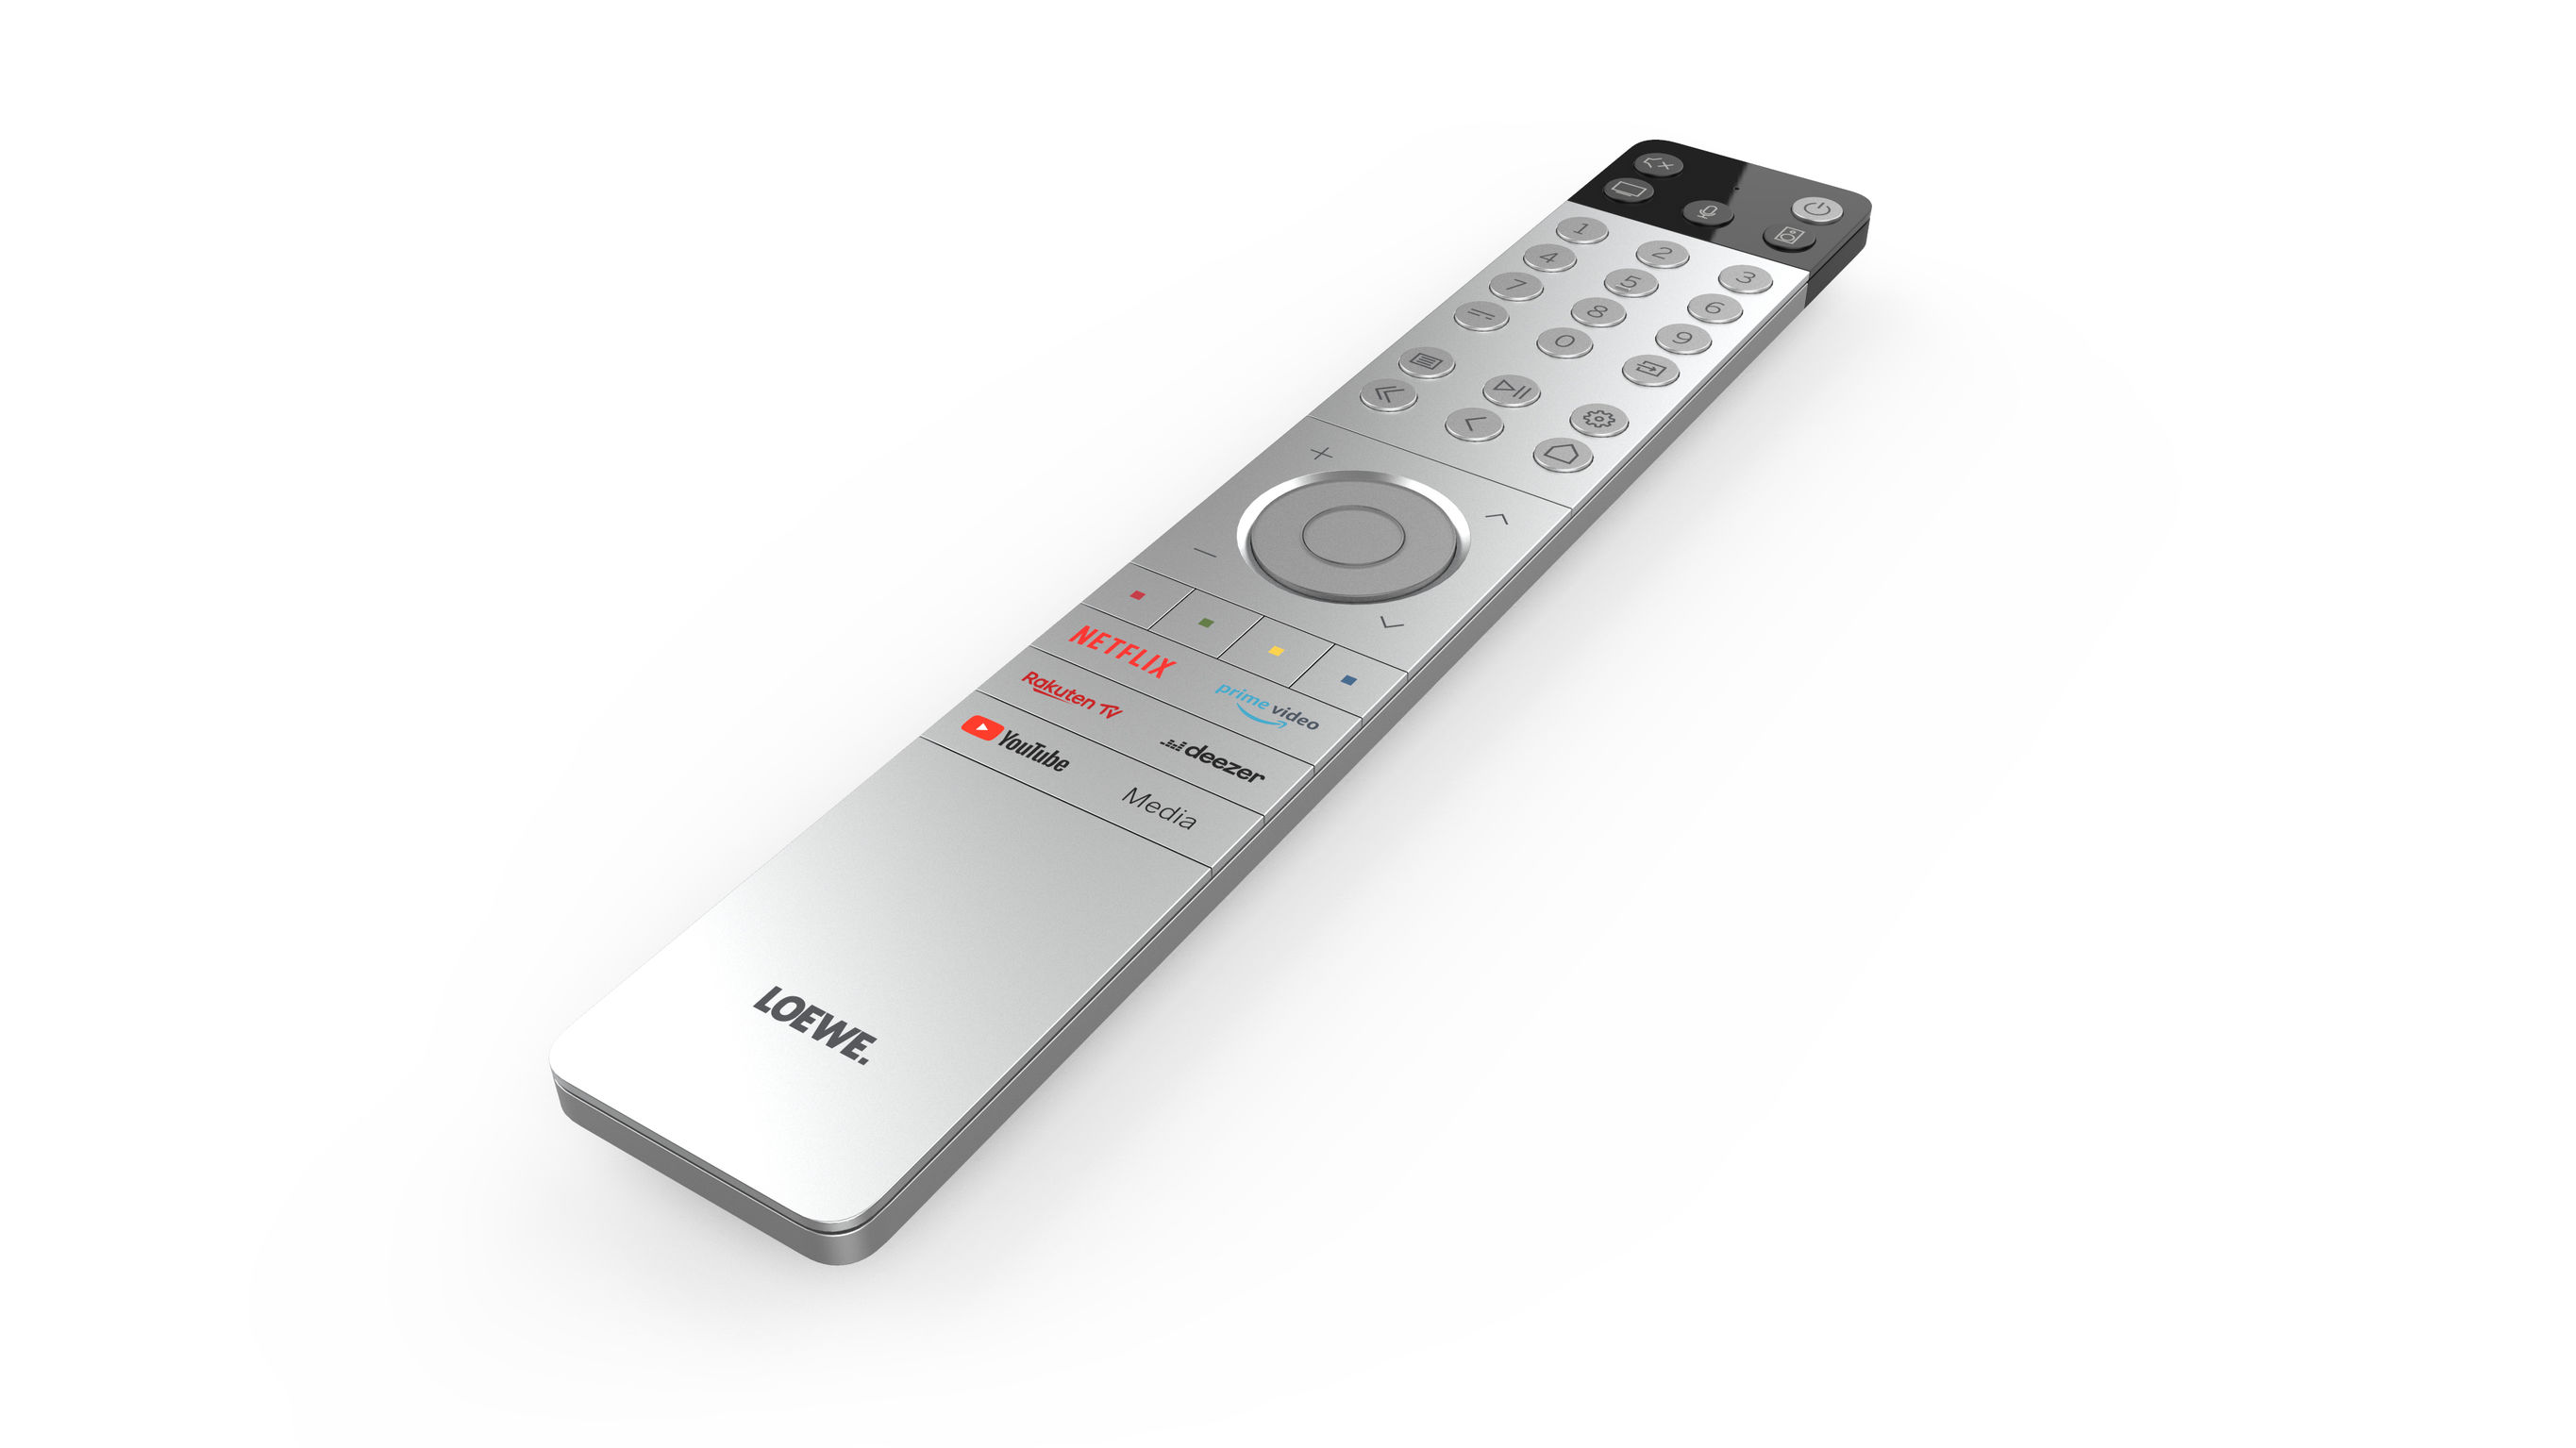 loewe tv remote control